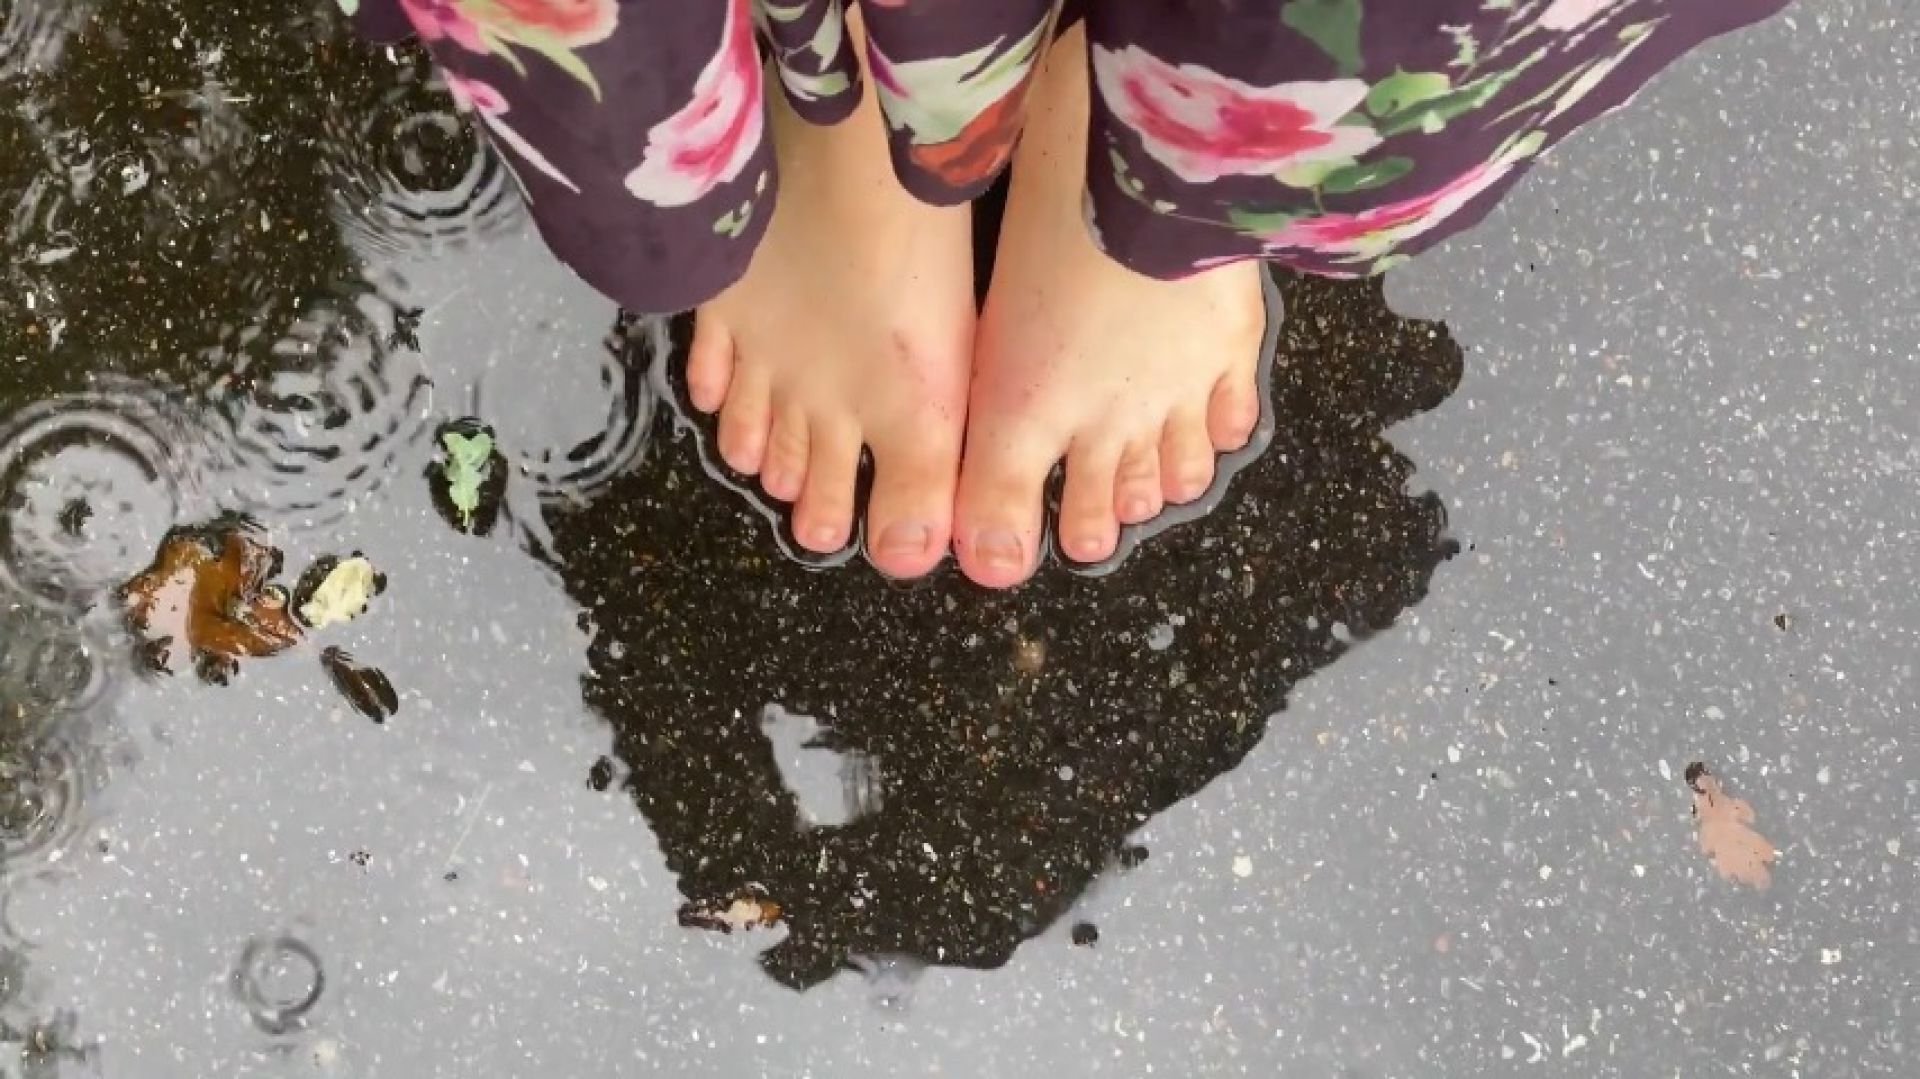 Walking Out In The Rain Bare Feet - MissJenniP